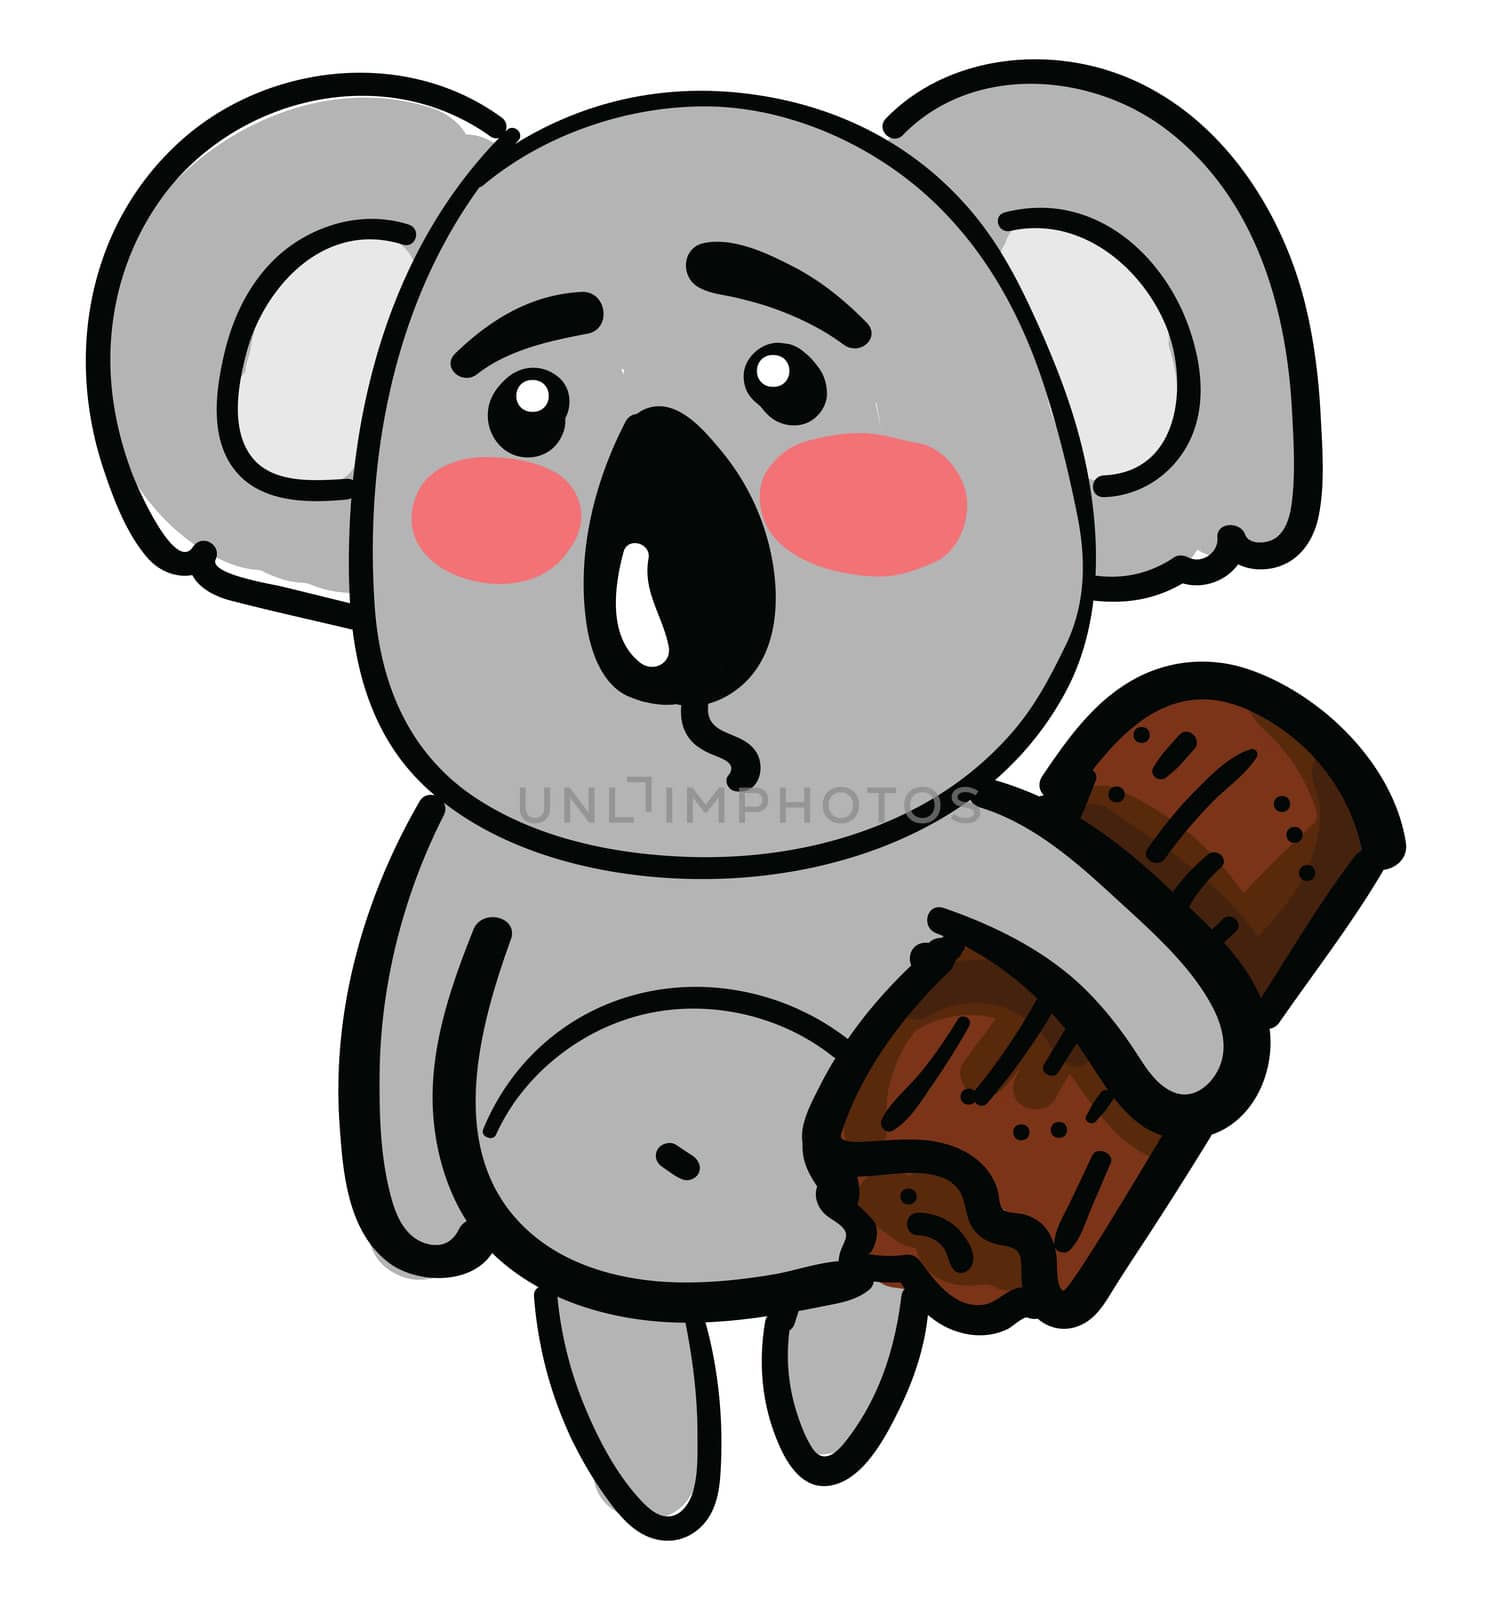 Sad koala with wood , illustration, vector on white background